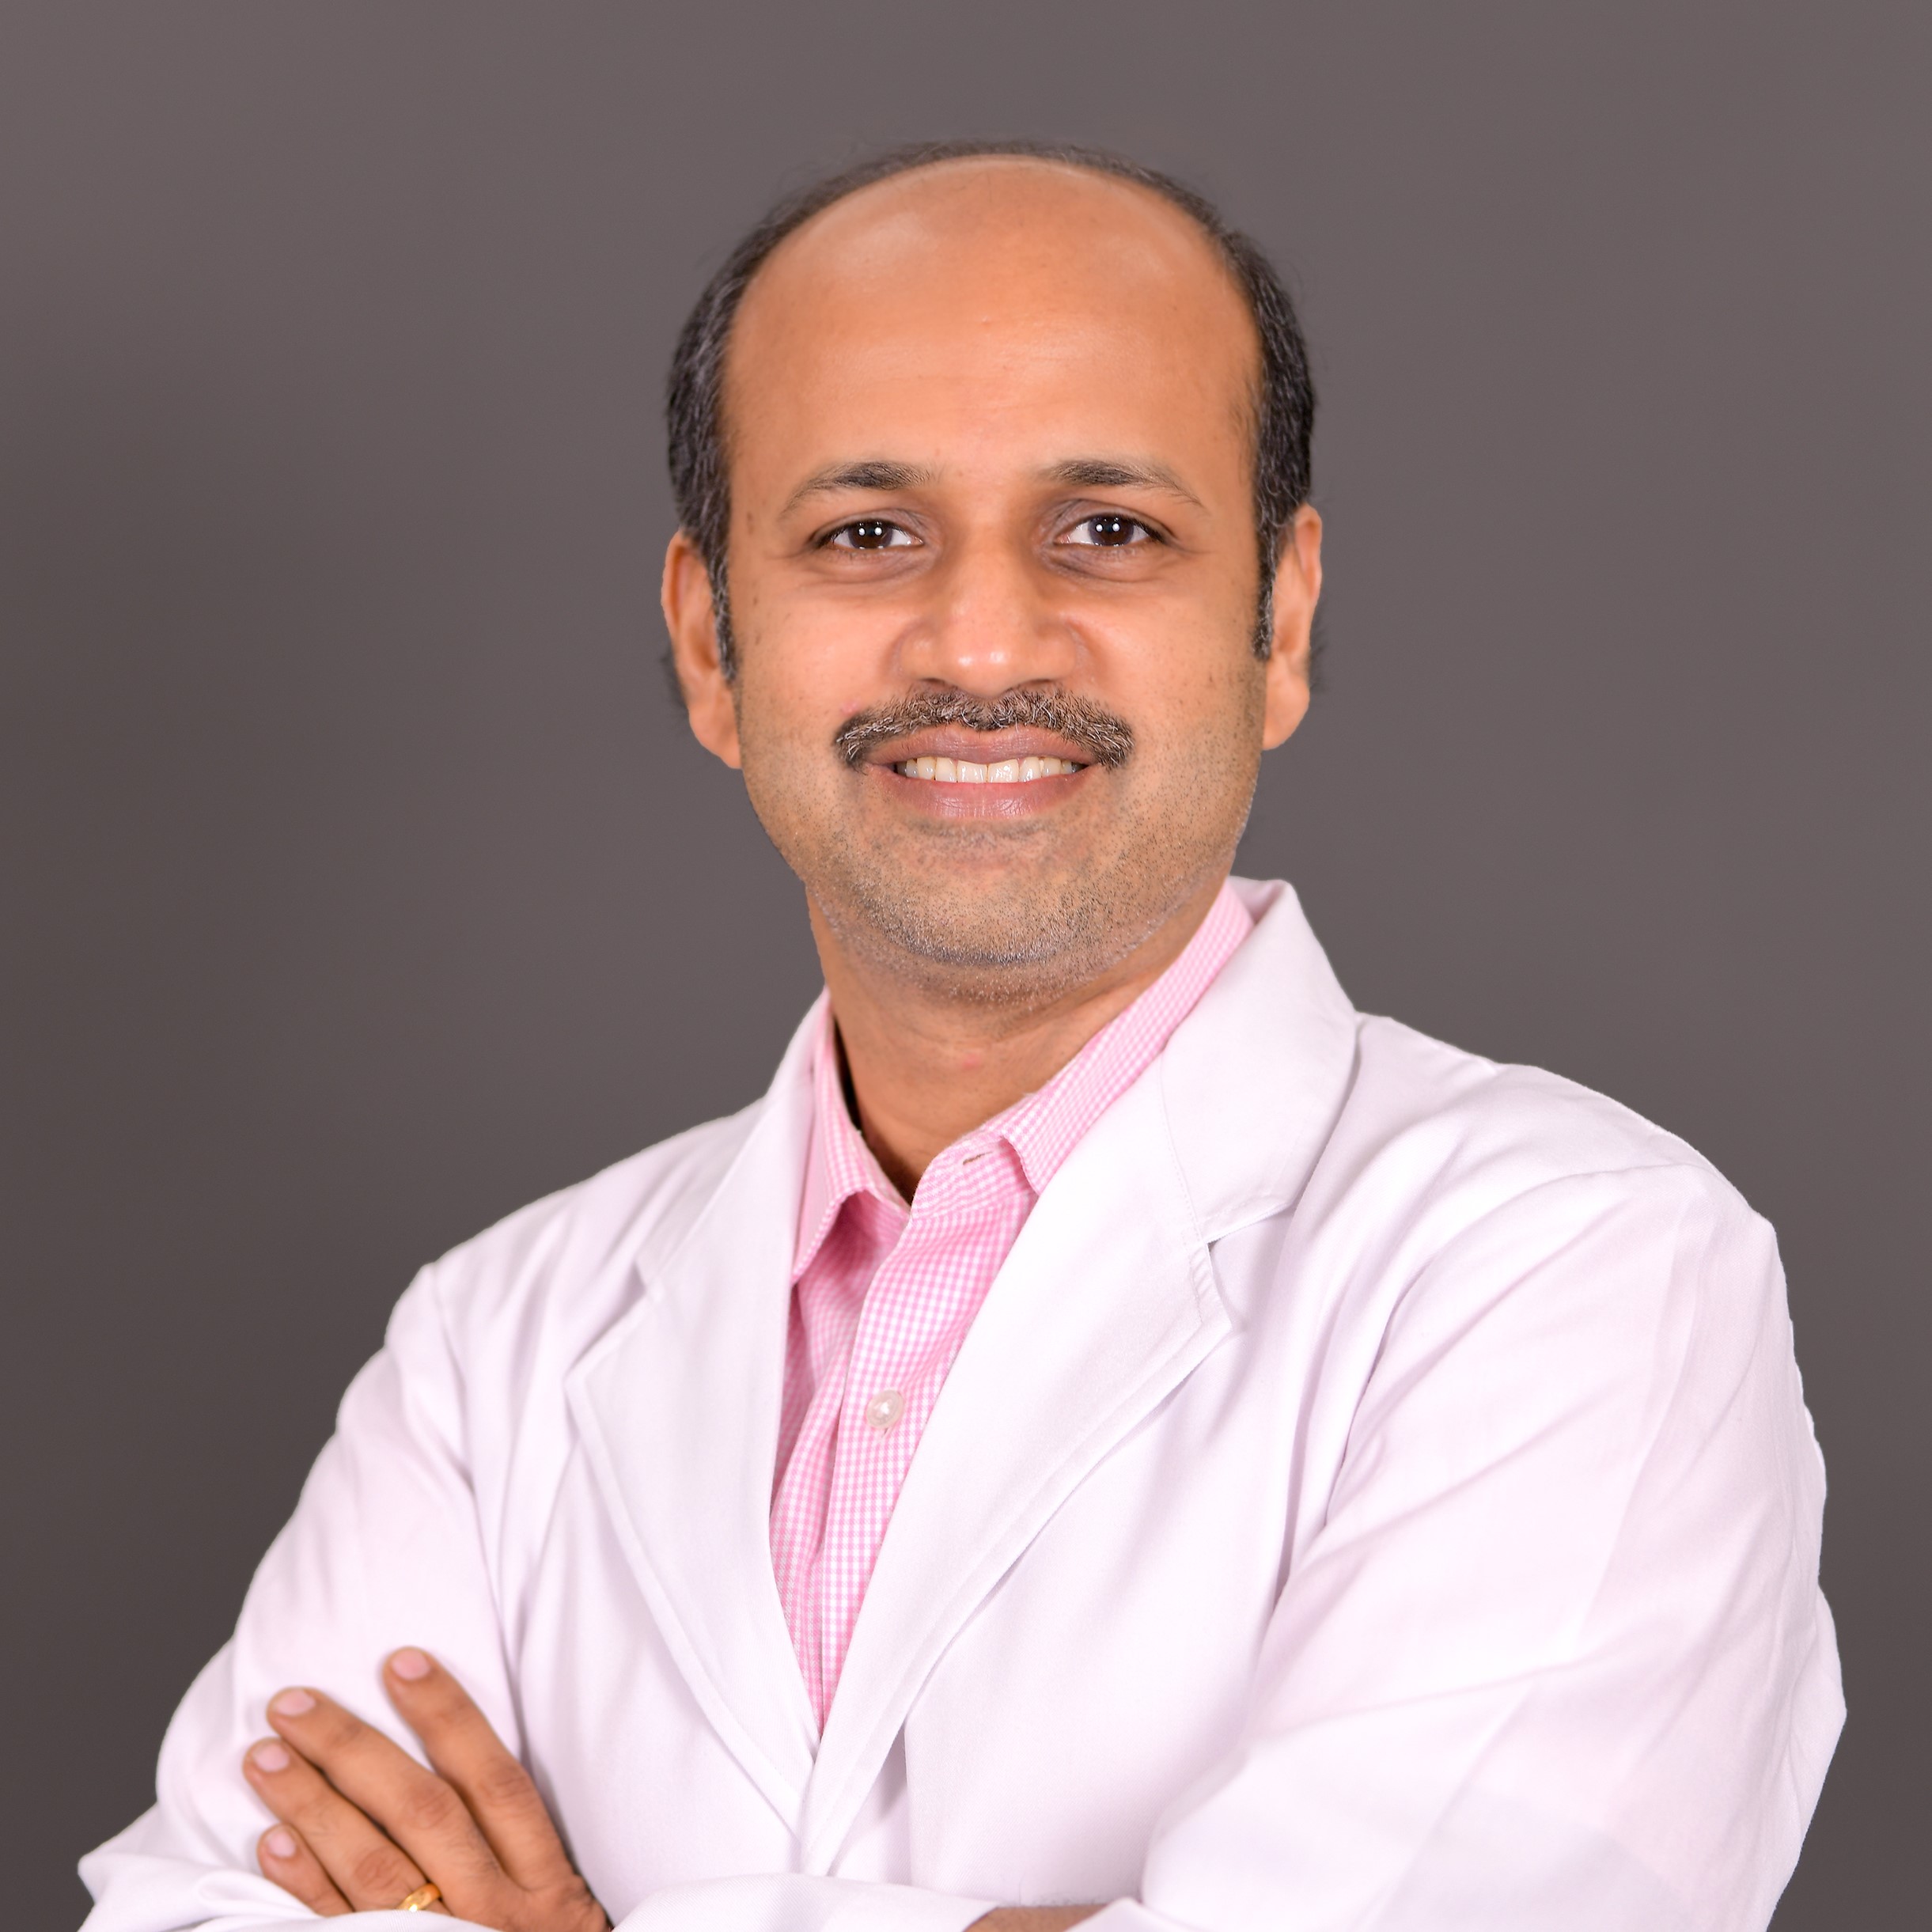 Dr. Vinugopal